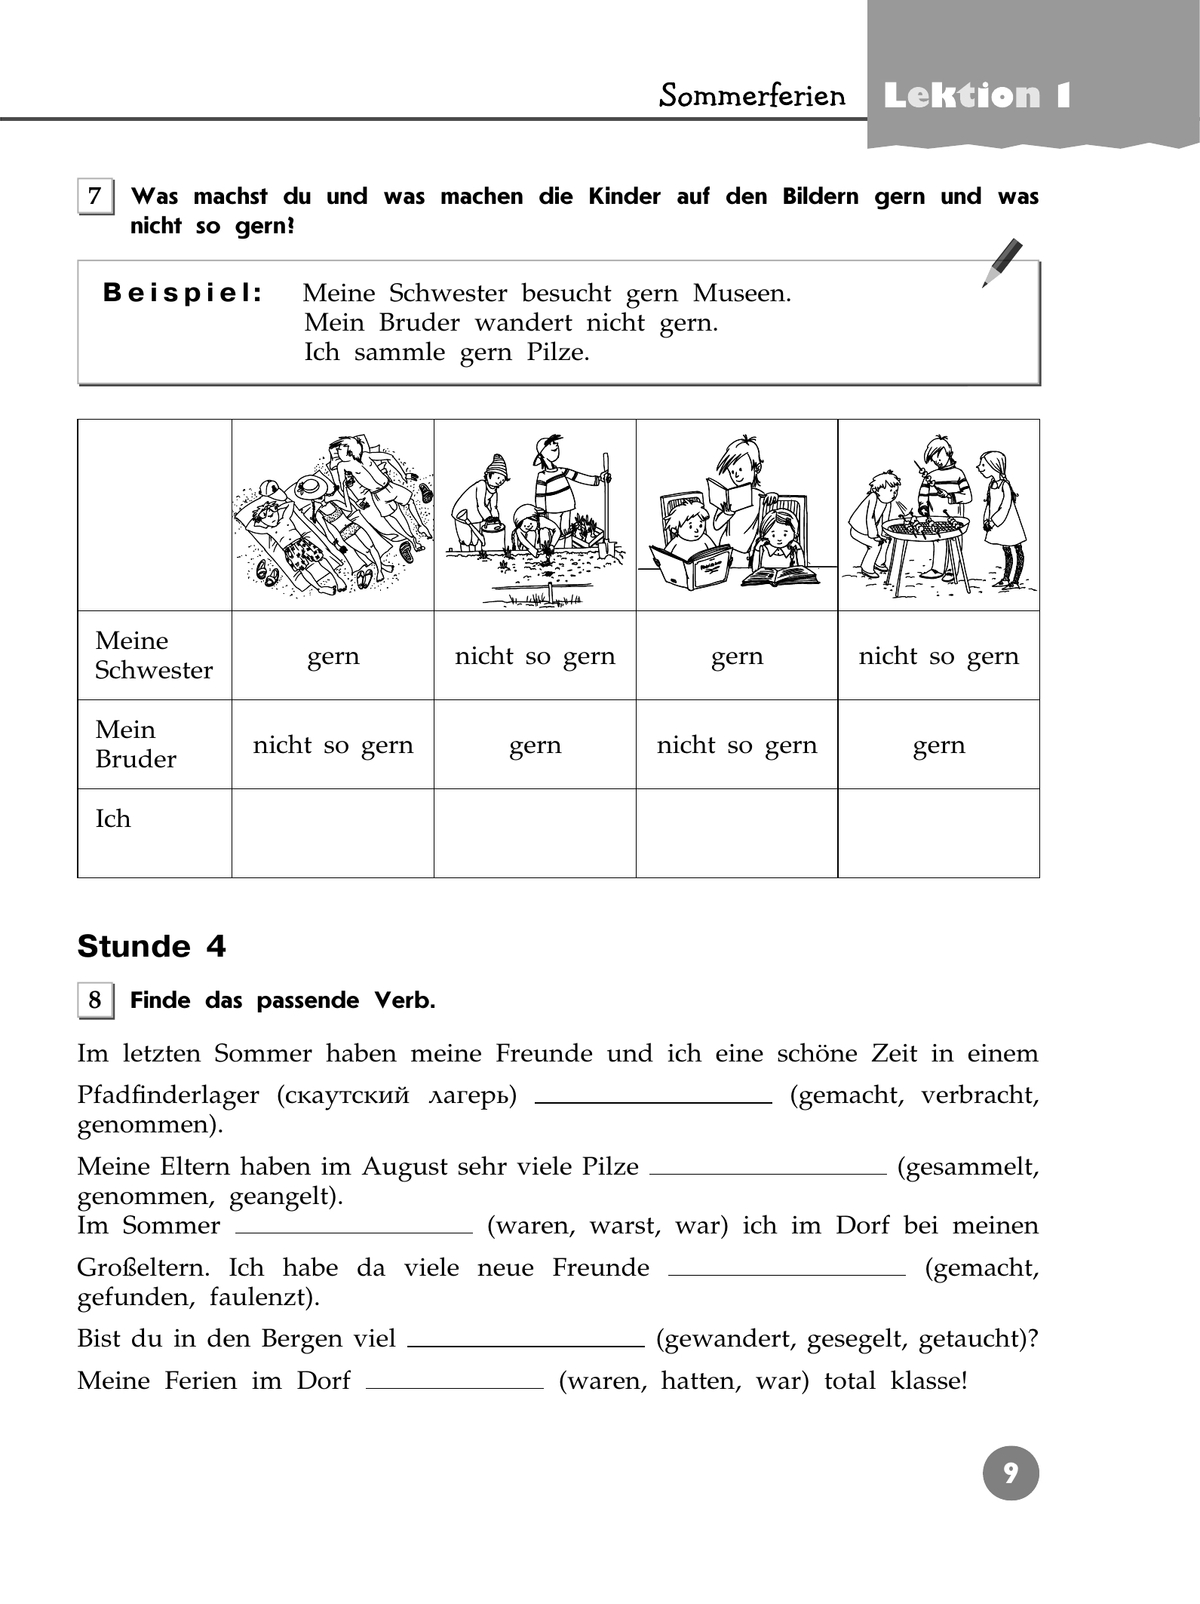 Немецкий язык. Рабочая тетрадь. 7 класс 10